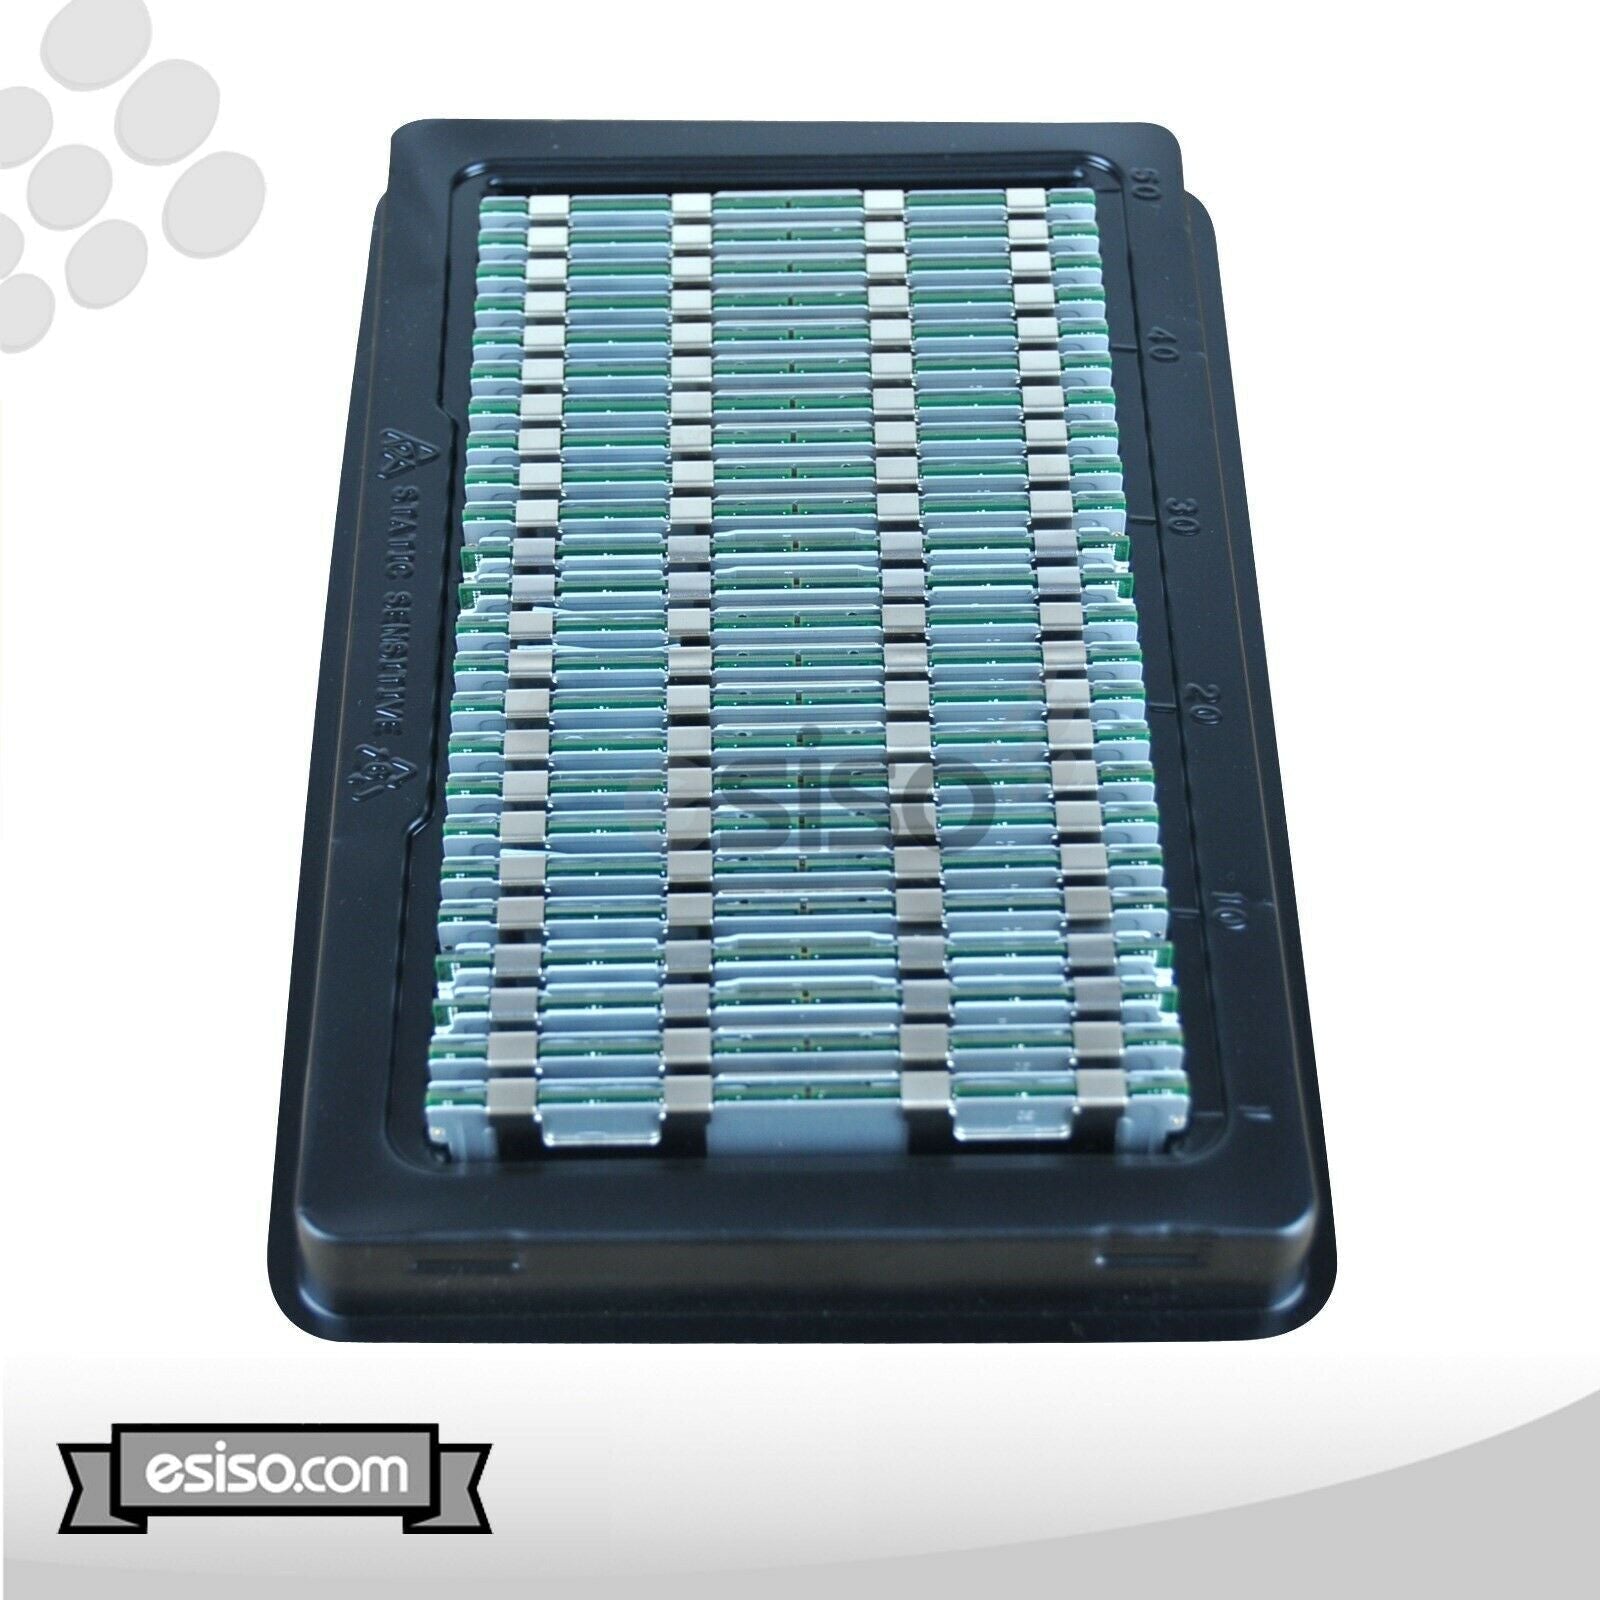 144GB (18x 8GB) 10600R RAM MEMORY FOR HP BL490c DL165 DL360 DL380 ML380 G7